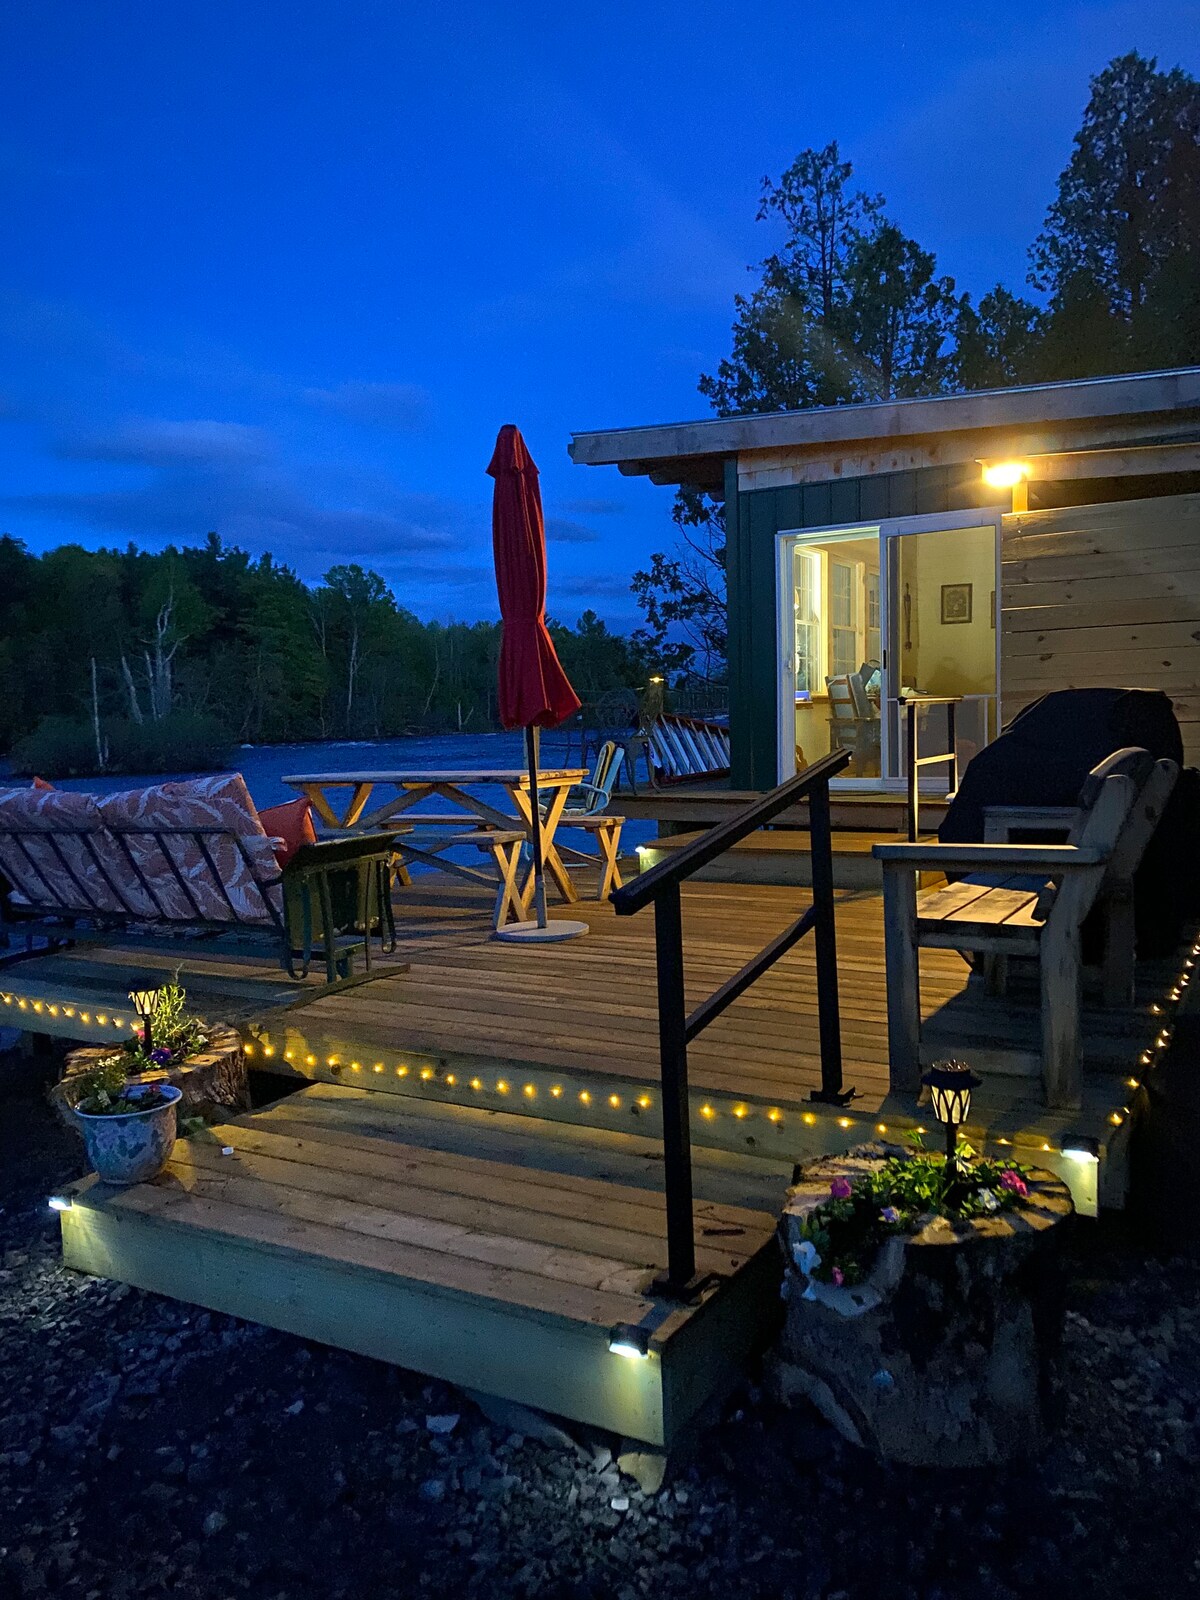 River Bank Camping, Cedar Grove Cabin